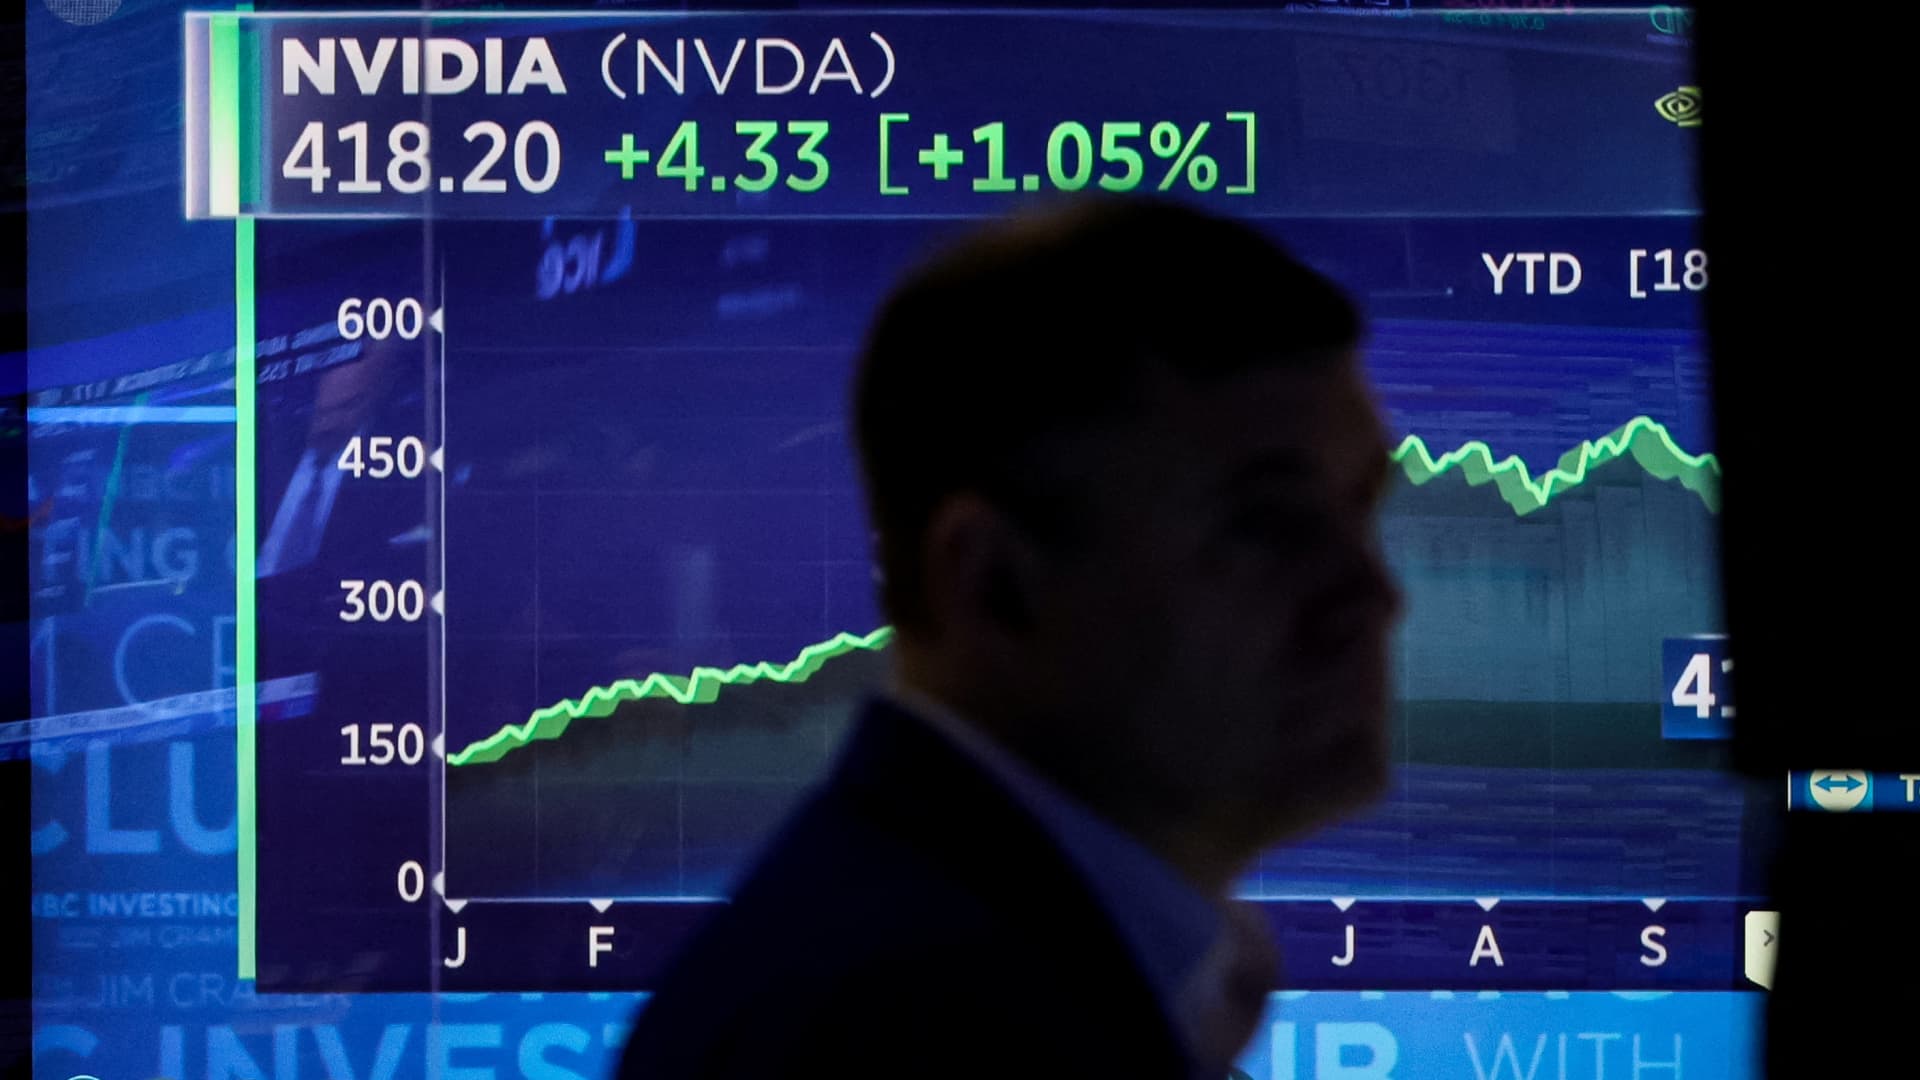 Ketika Nvidia naik – saham global ini cenderung naik juga, seperti yang dikatakan sejarah